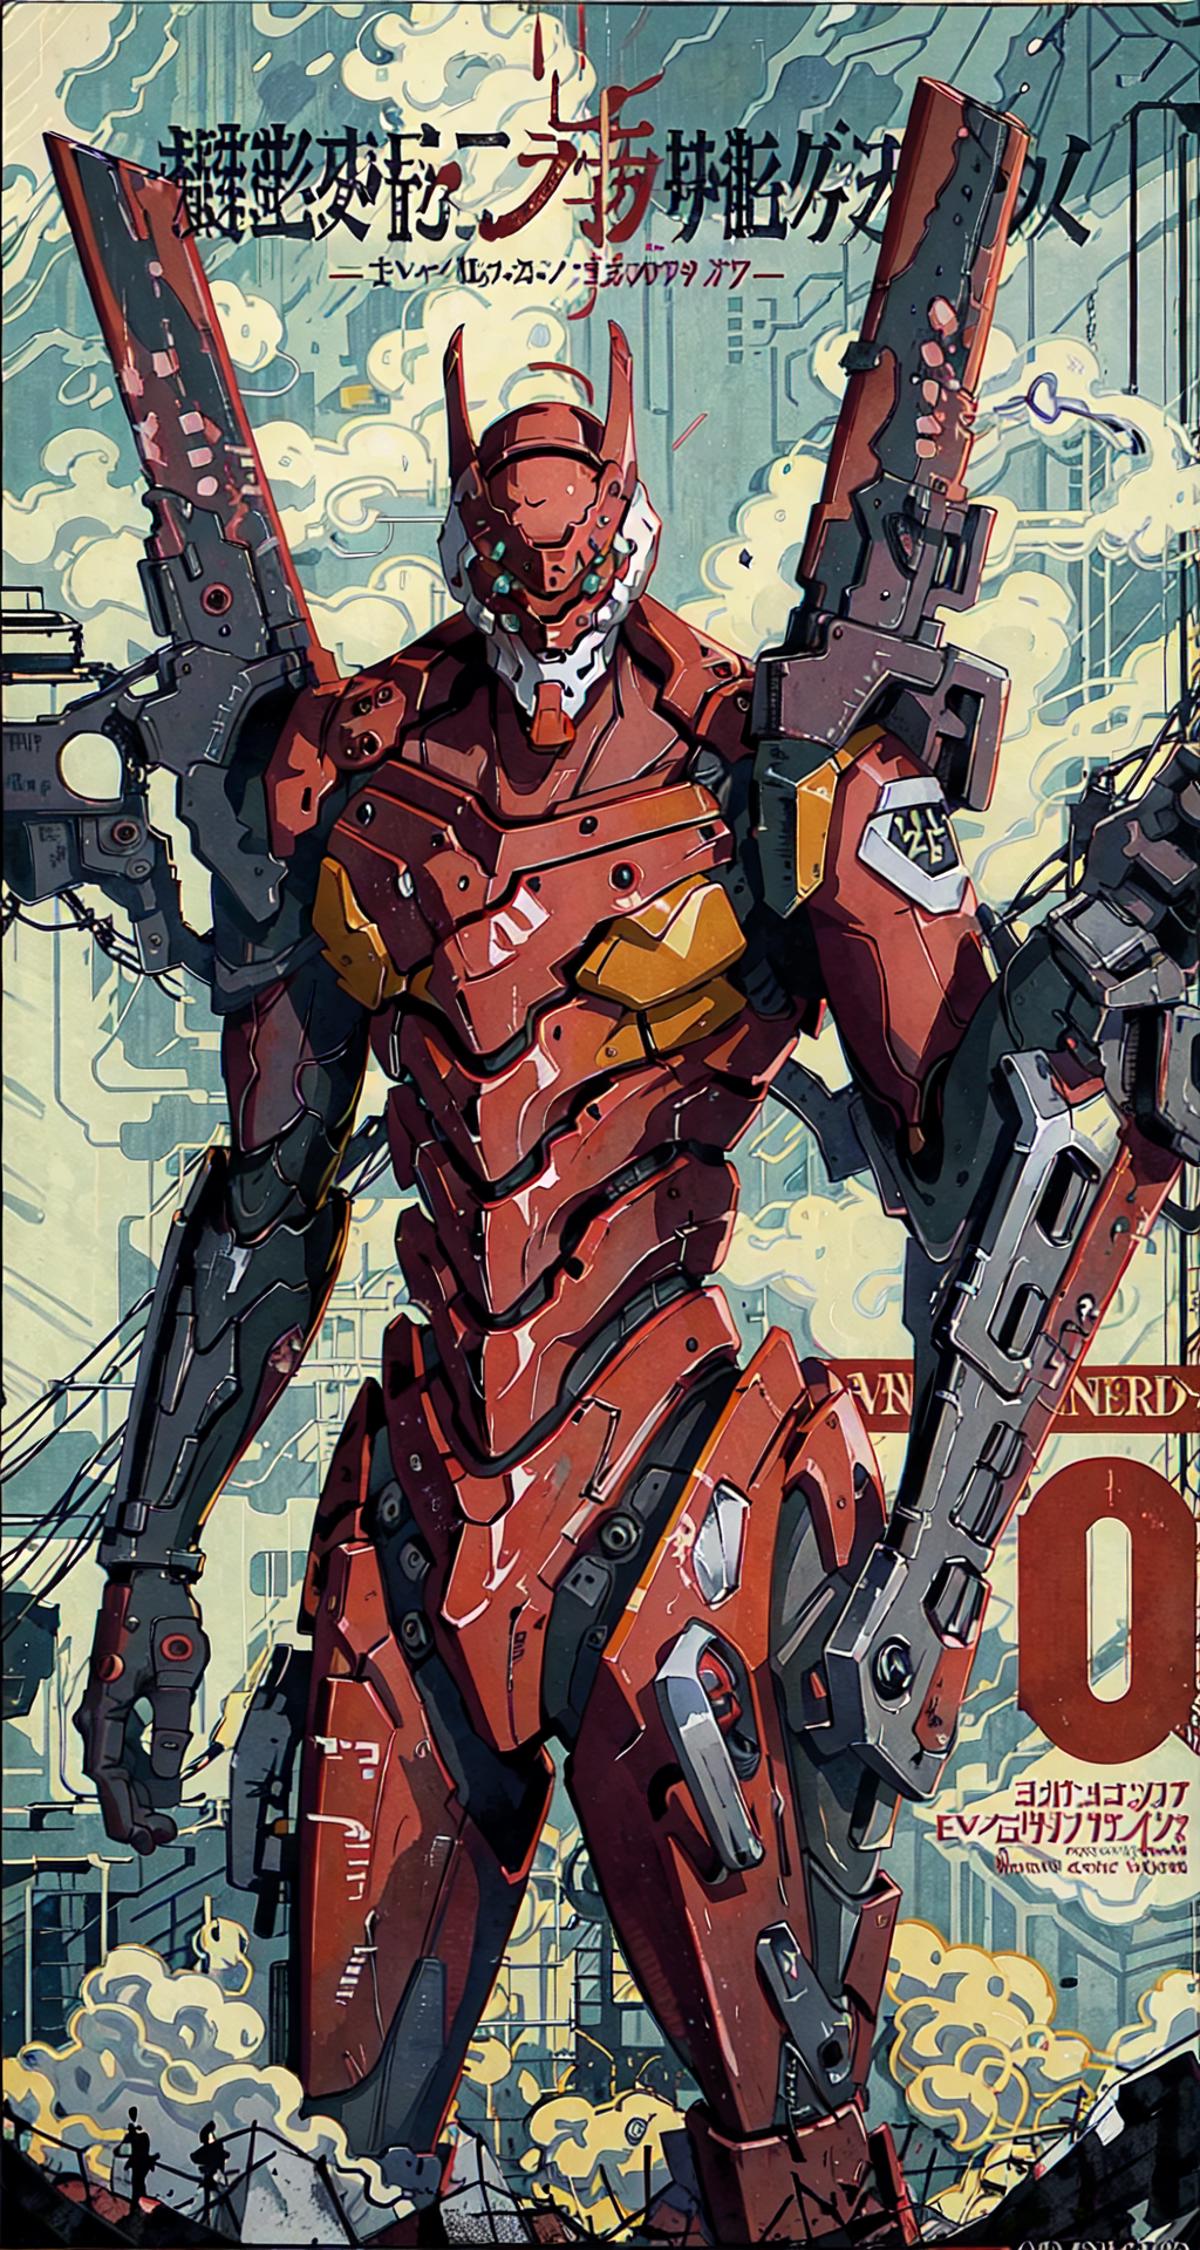 A Warhammer 40K poster featuring a robot.